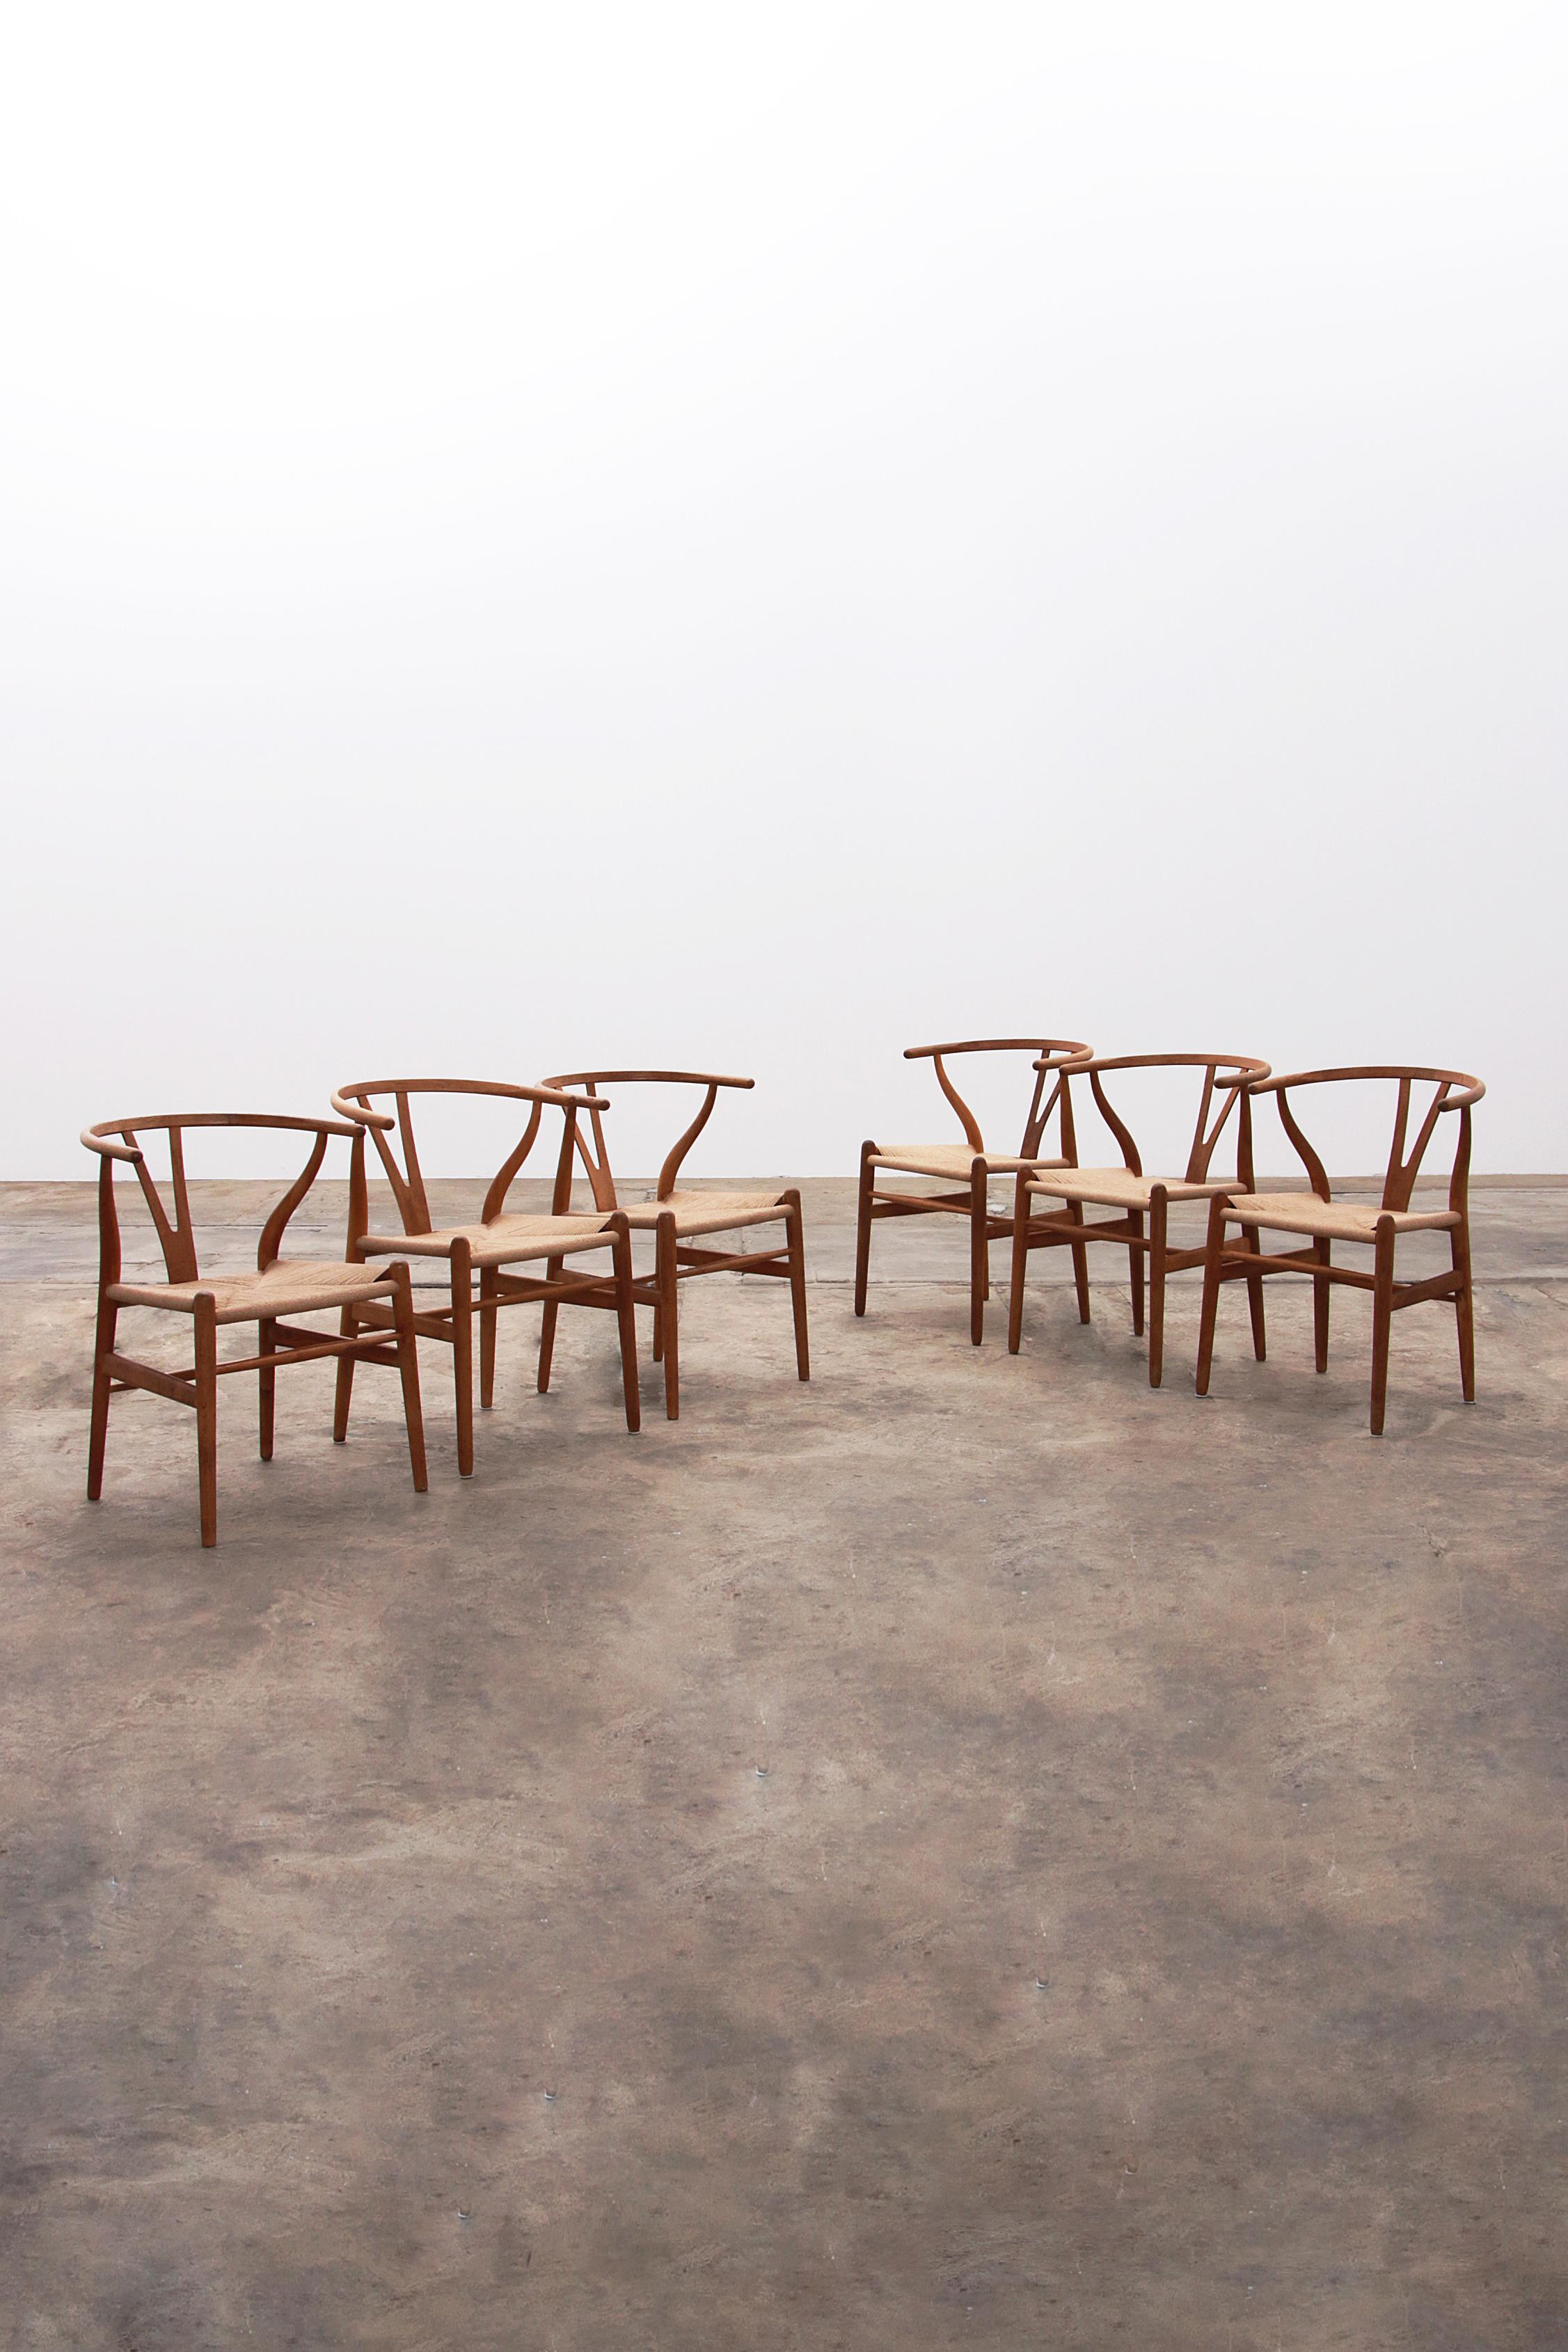 Découvrez l'élégance intemporelle et le confort exceptionnel des chaises Wishbone, conçues par Hans J. Wegner en 1949. Cet ensemble de six chaises, produit par Carl Hansen & Son au Danemark en 1970, représente l'apogée du design scandinave. Les